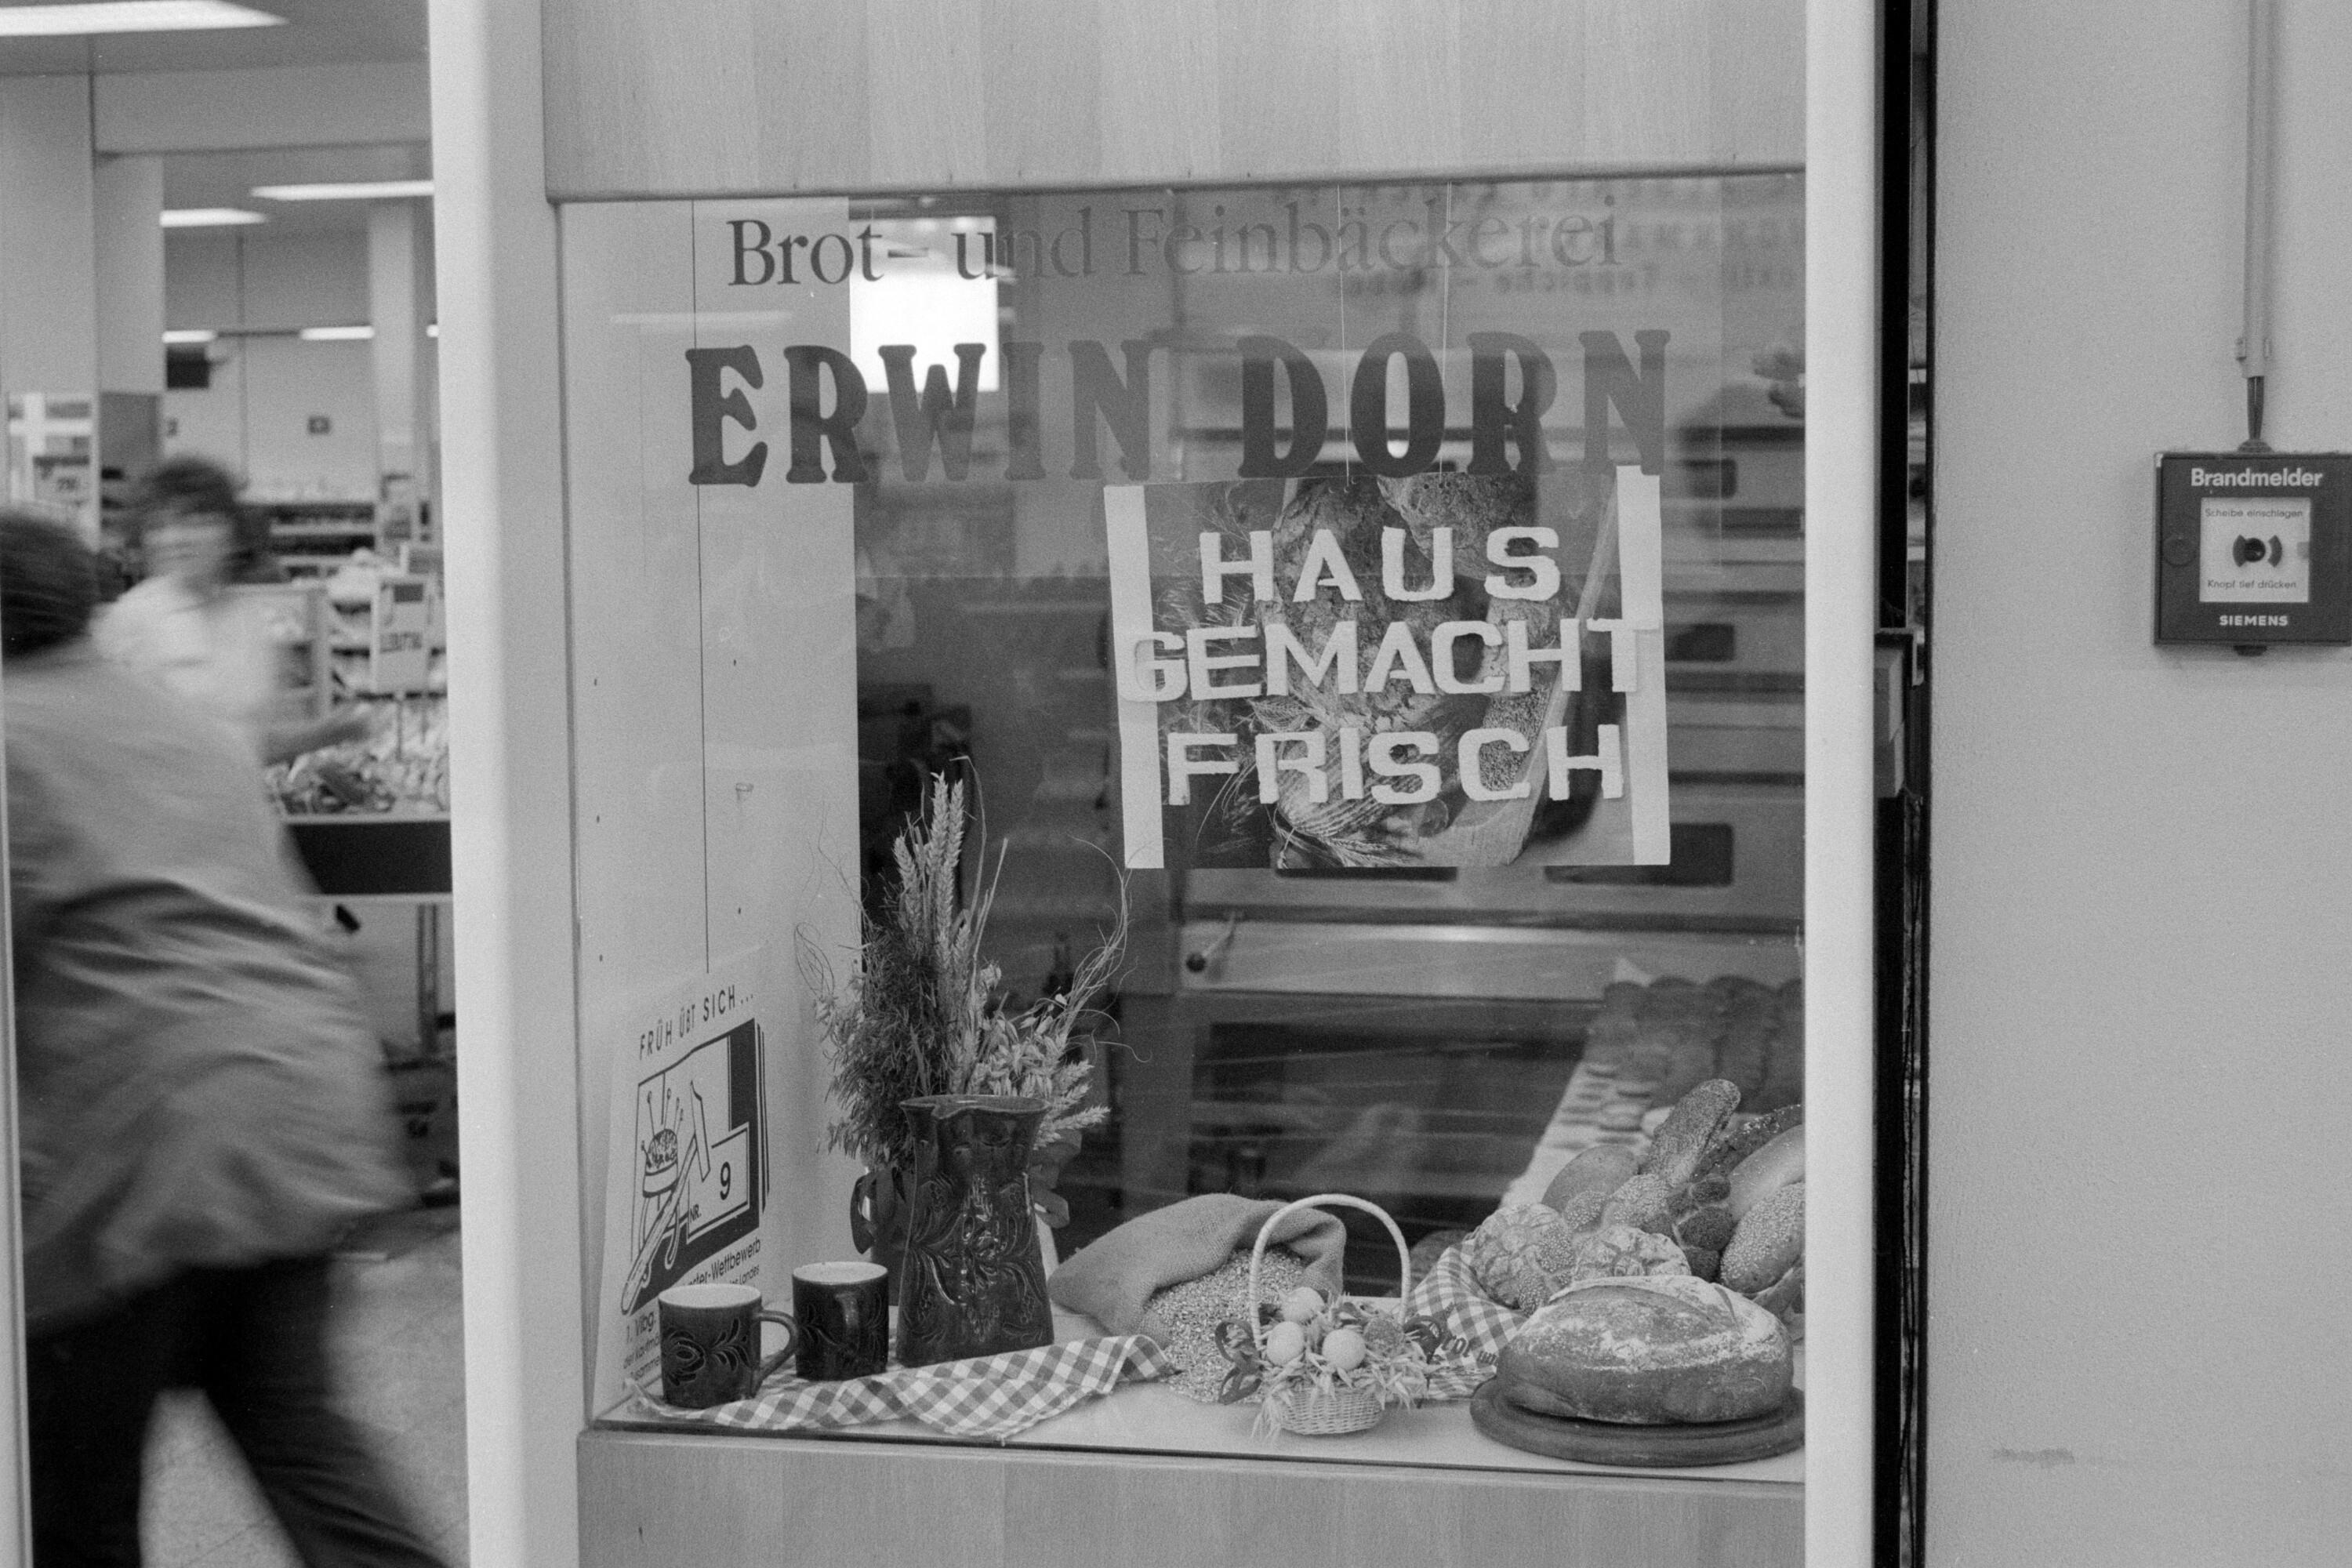 Schaufensterwettbewerb der Berufsschulen Bregenz, Feldkirch, Dornbirn, Bludenz></div>


    <hr>
    <div class=